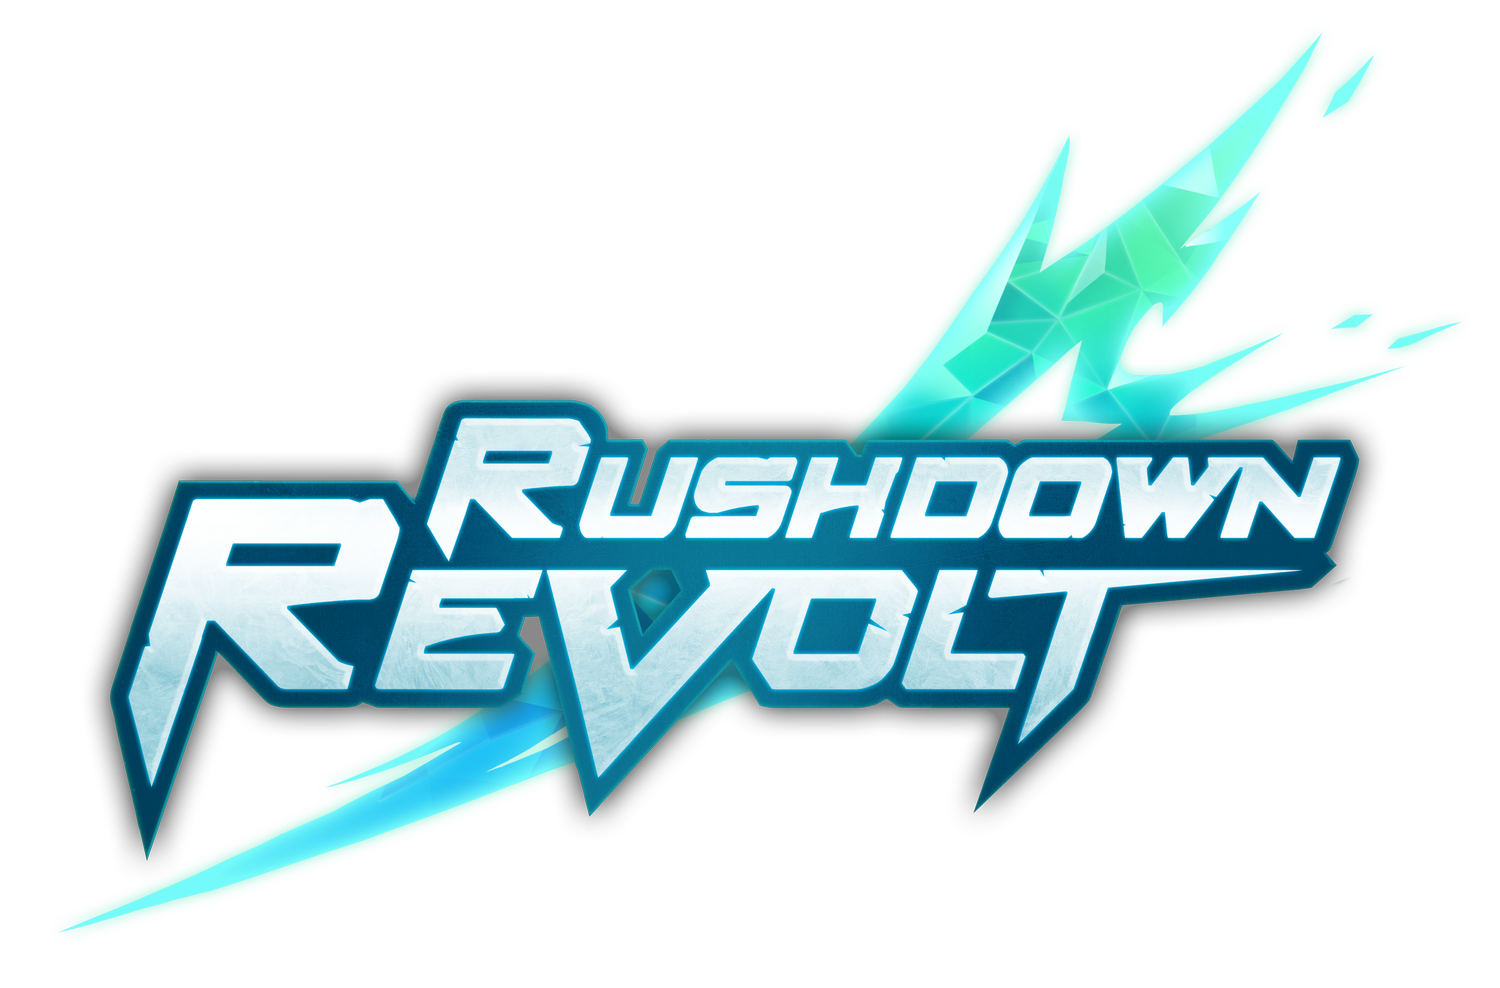 Rushdown Revolt